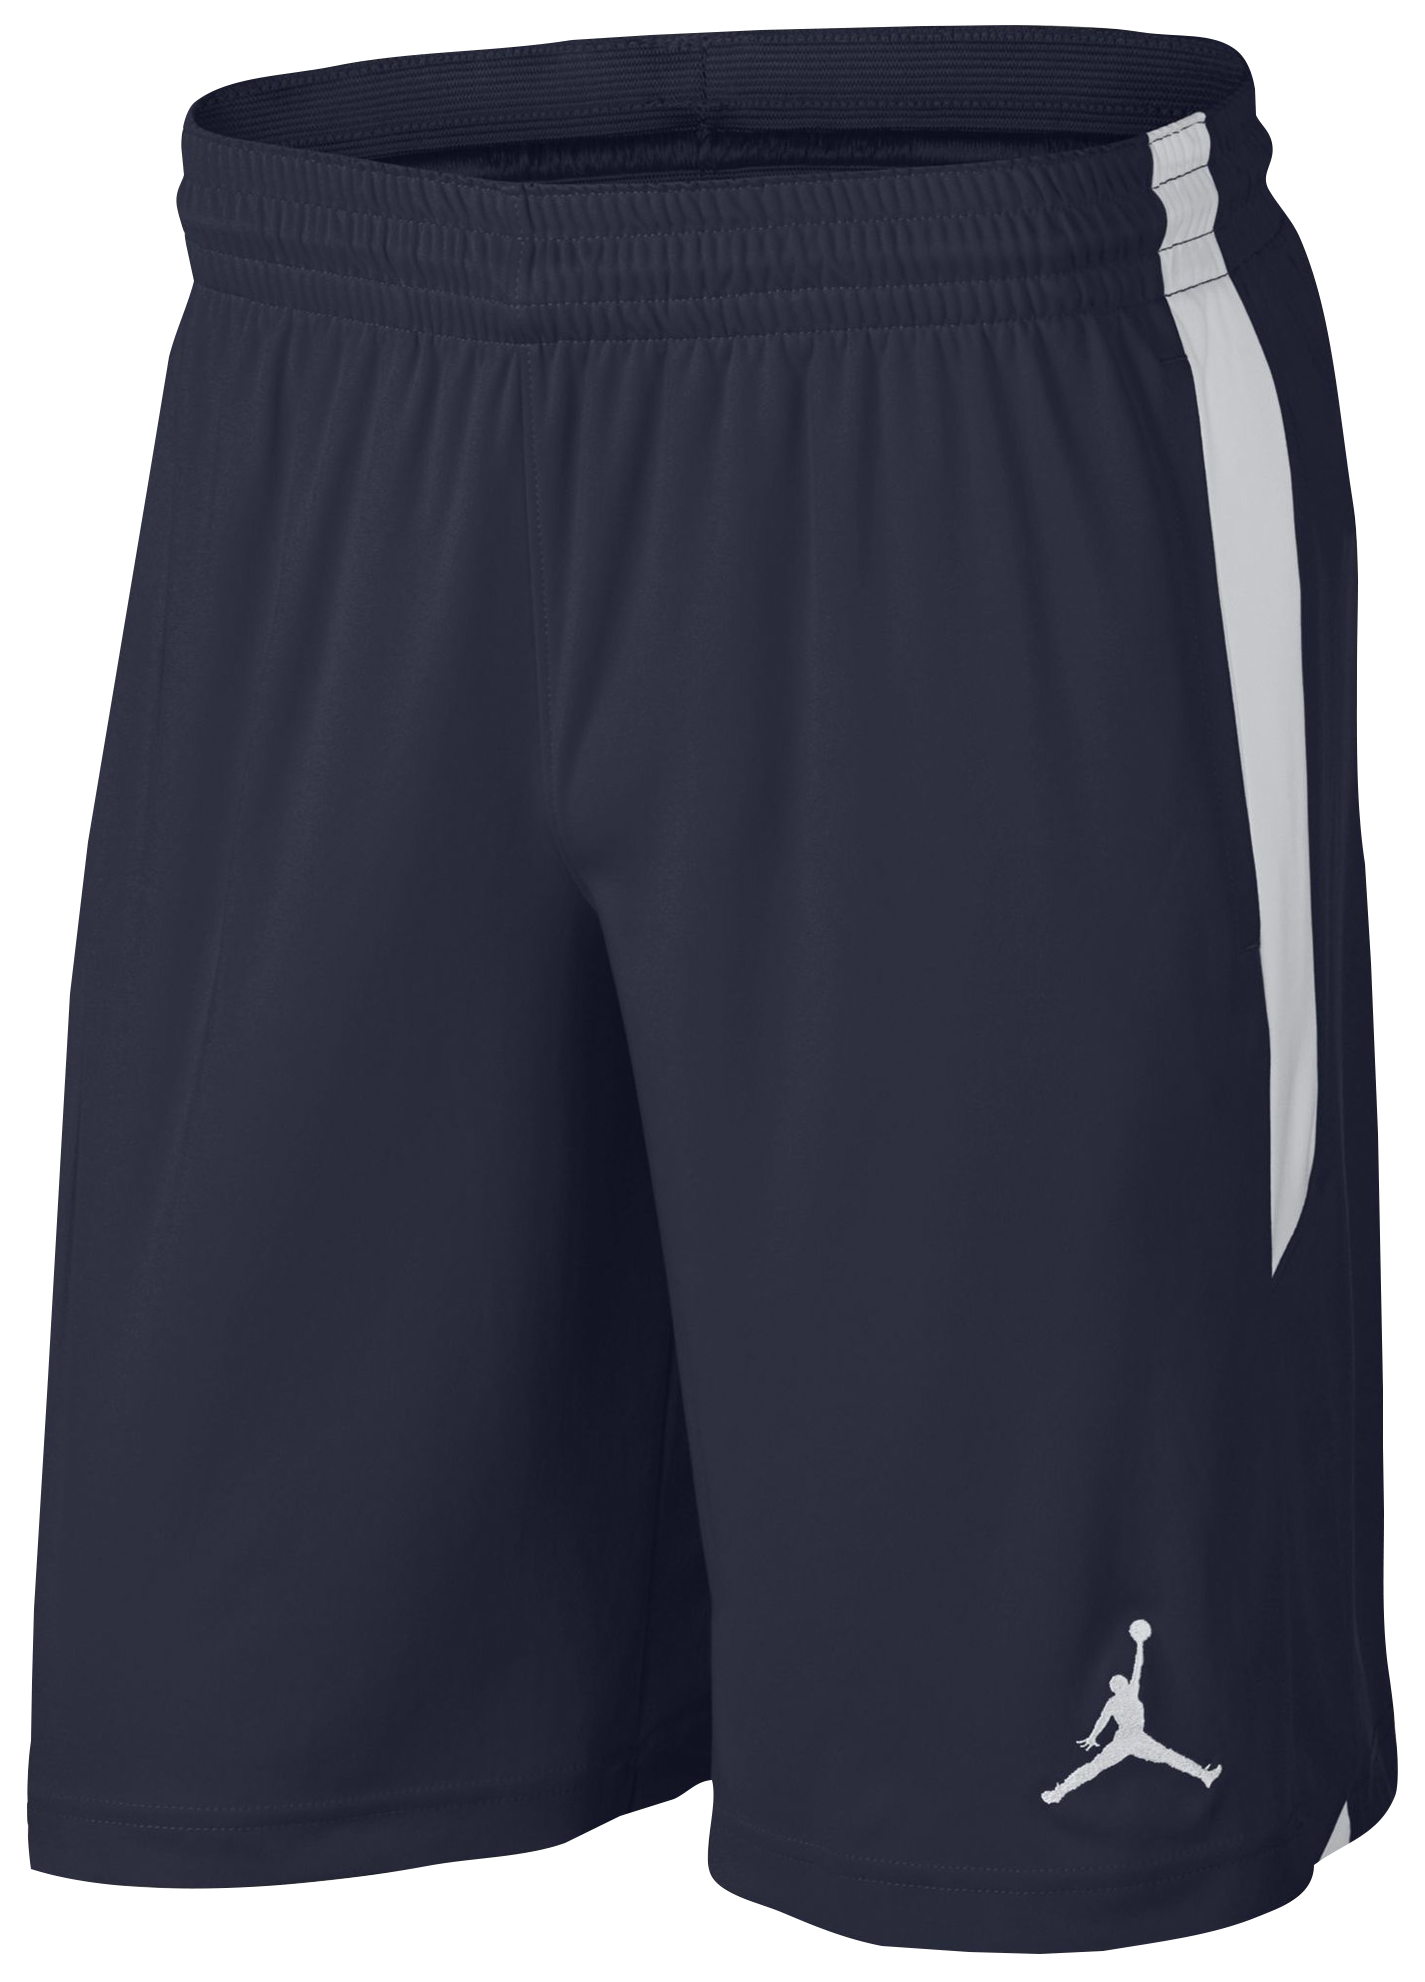 jordan 23 alpha shorts